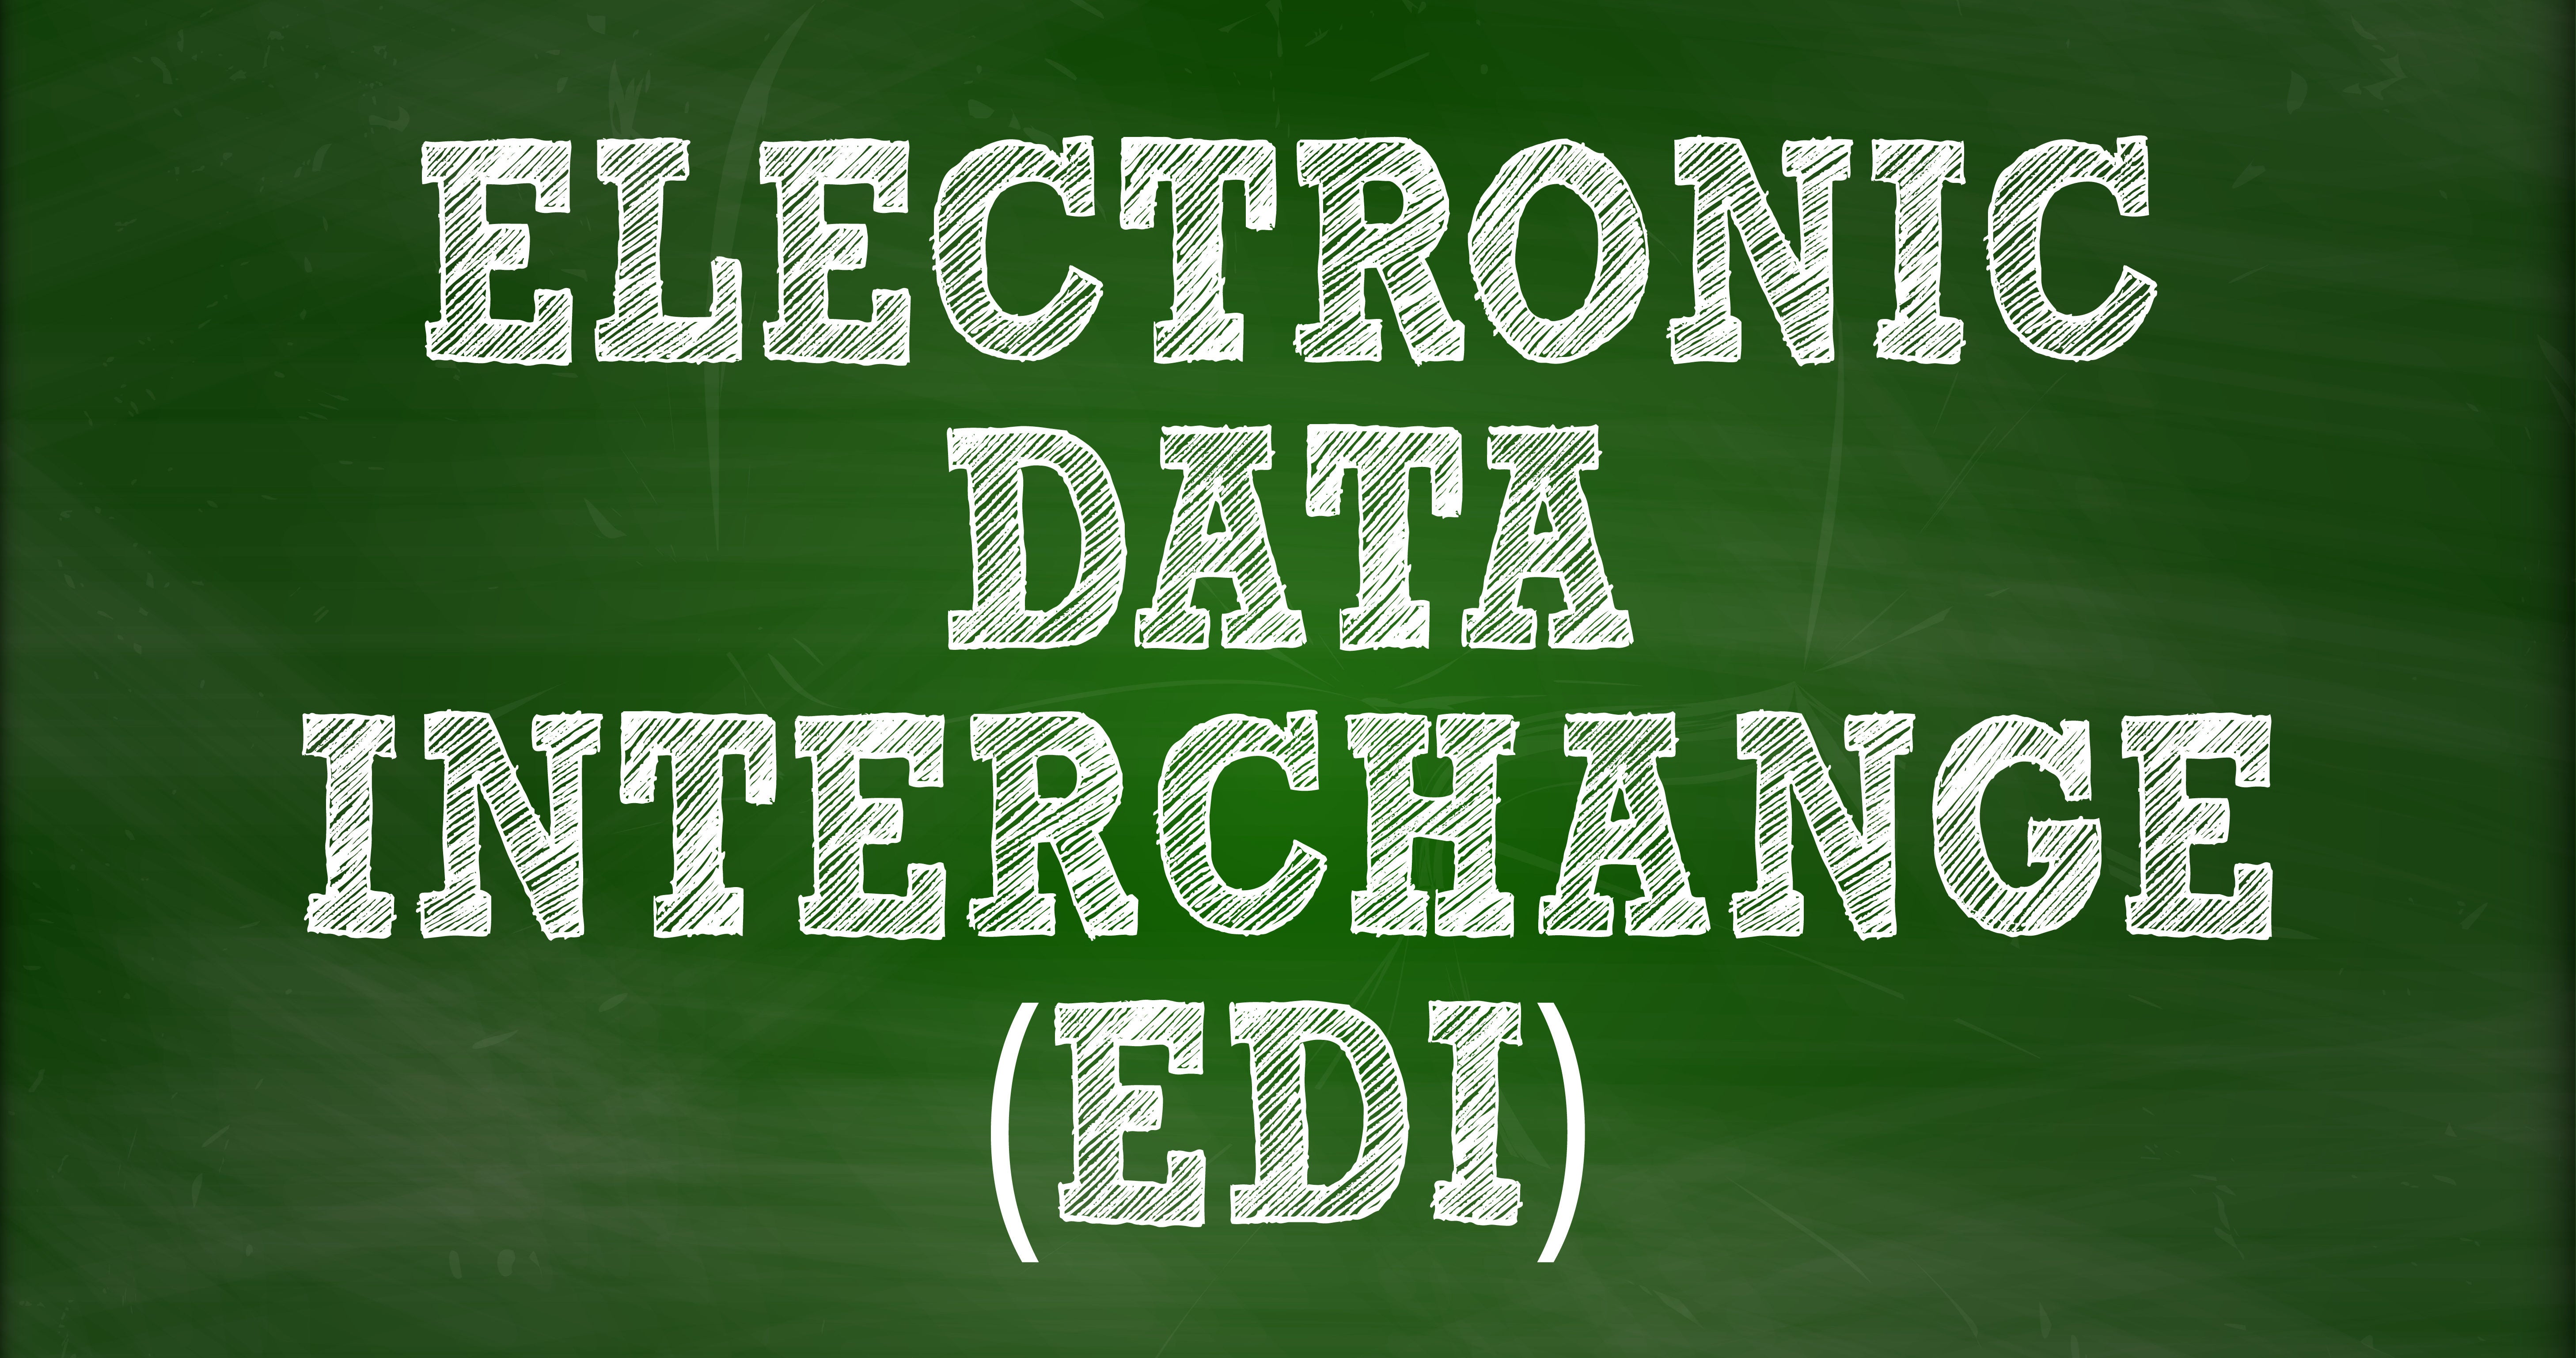 Chalkboard with "Electronic Data Interchange (EDI)"